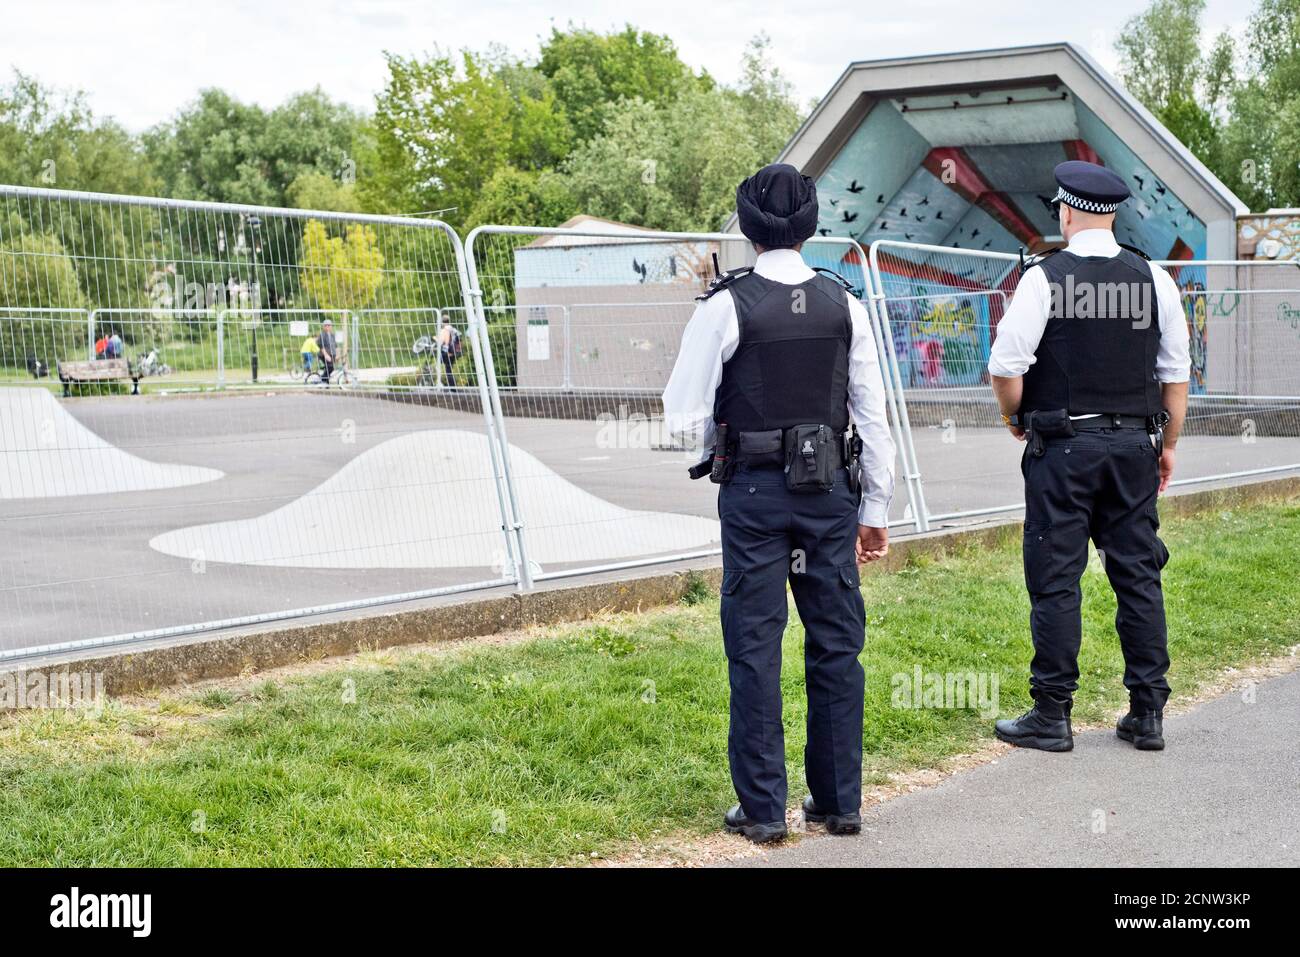 Polizei sperren; Lockdown-Regeln in einem der Londoner Parks durchsetzen, 2020. Stockfoto